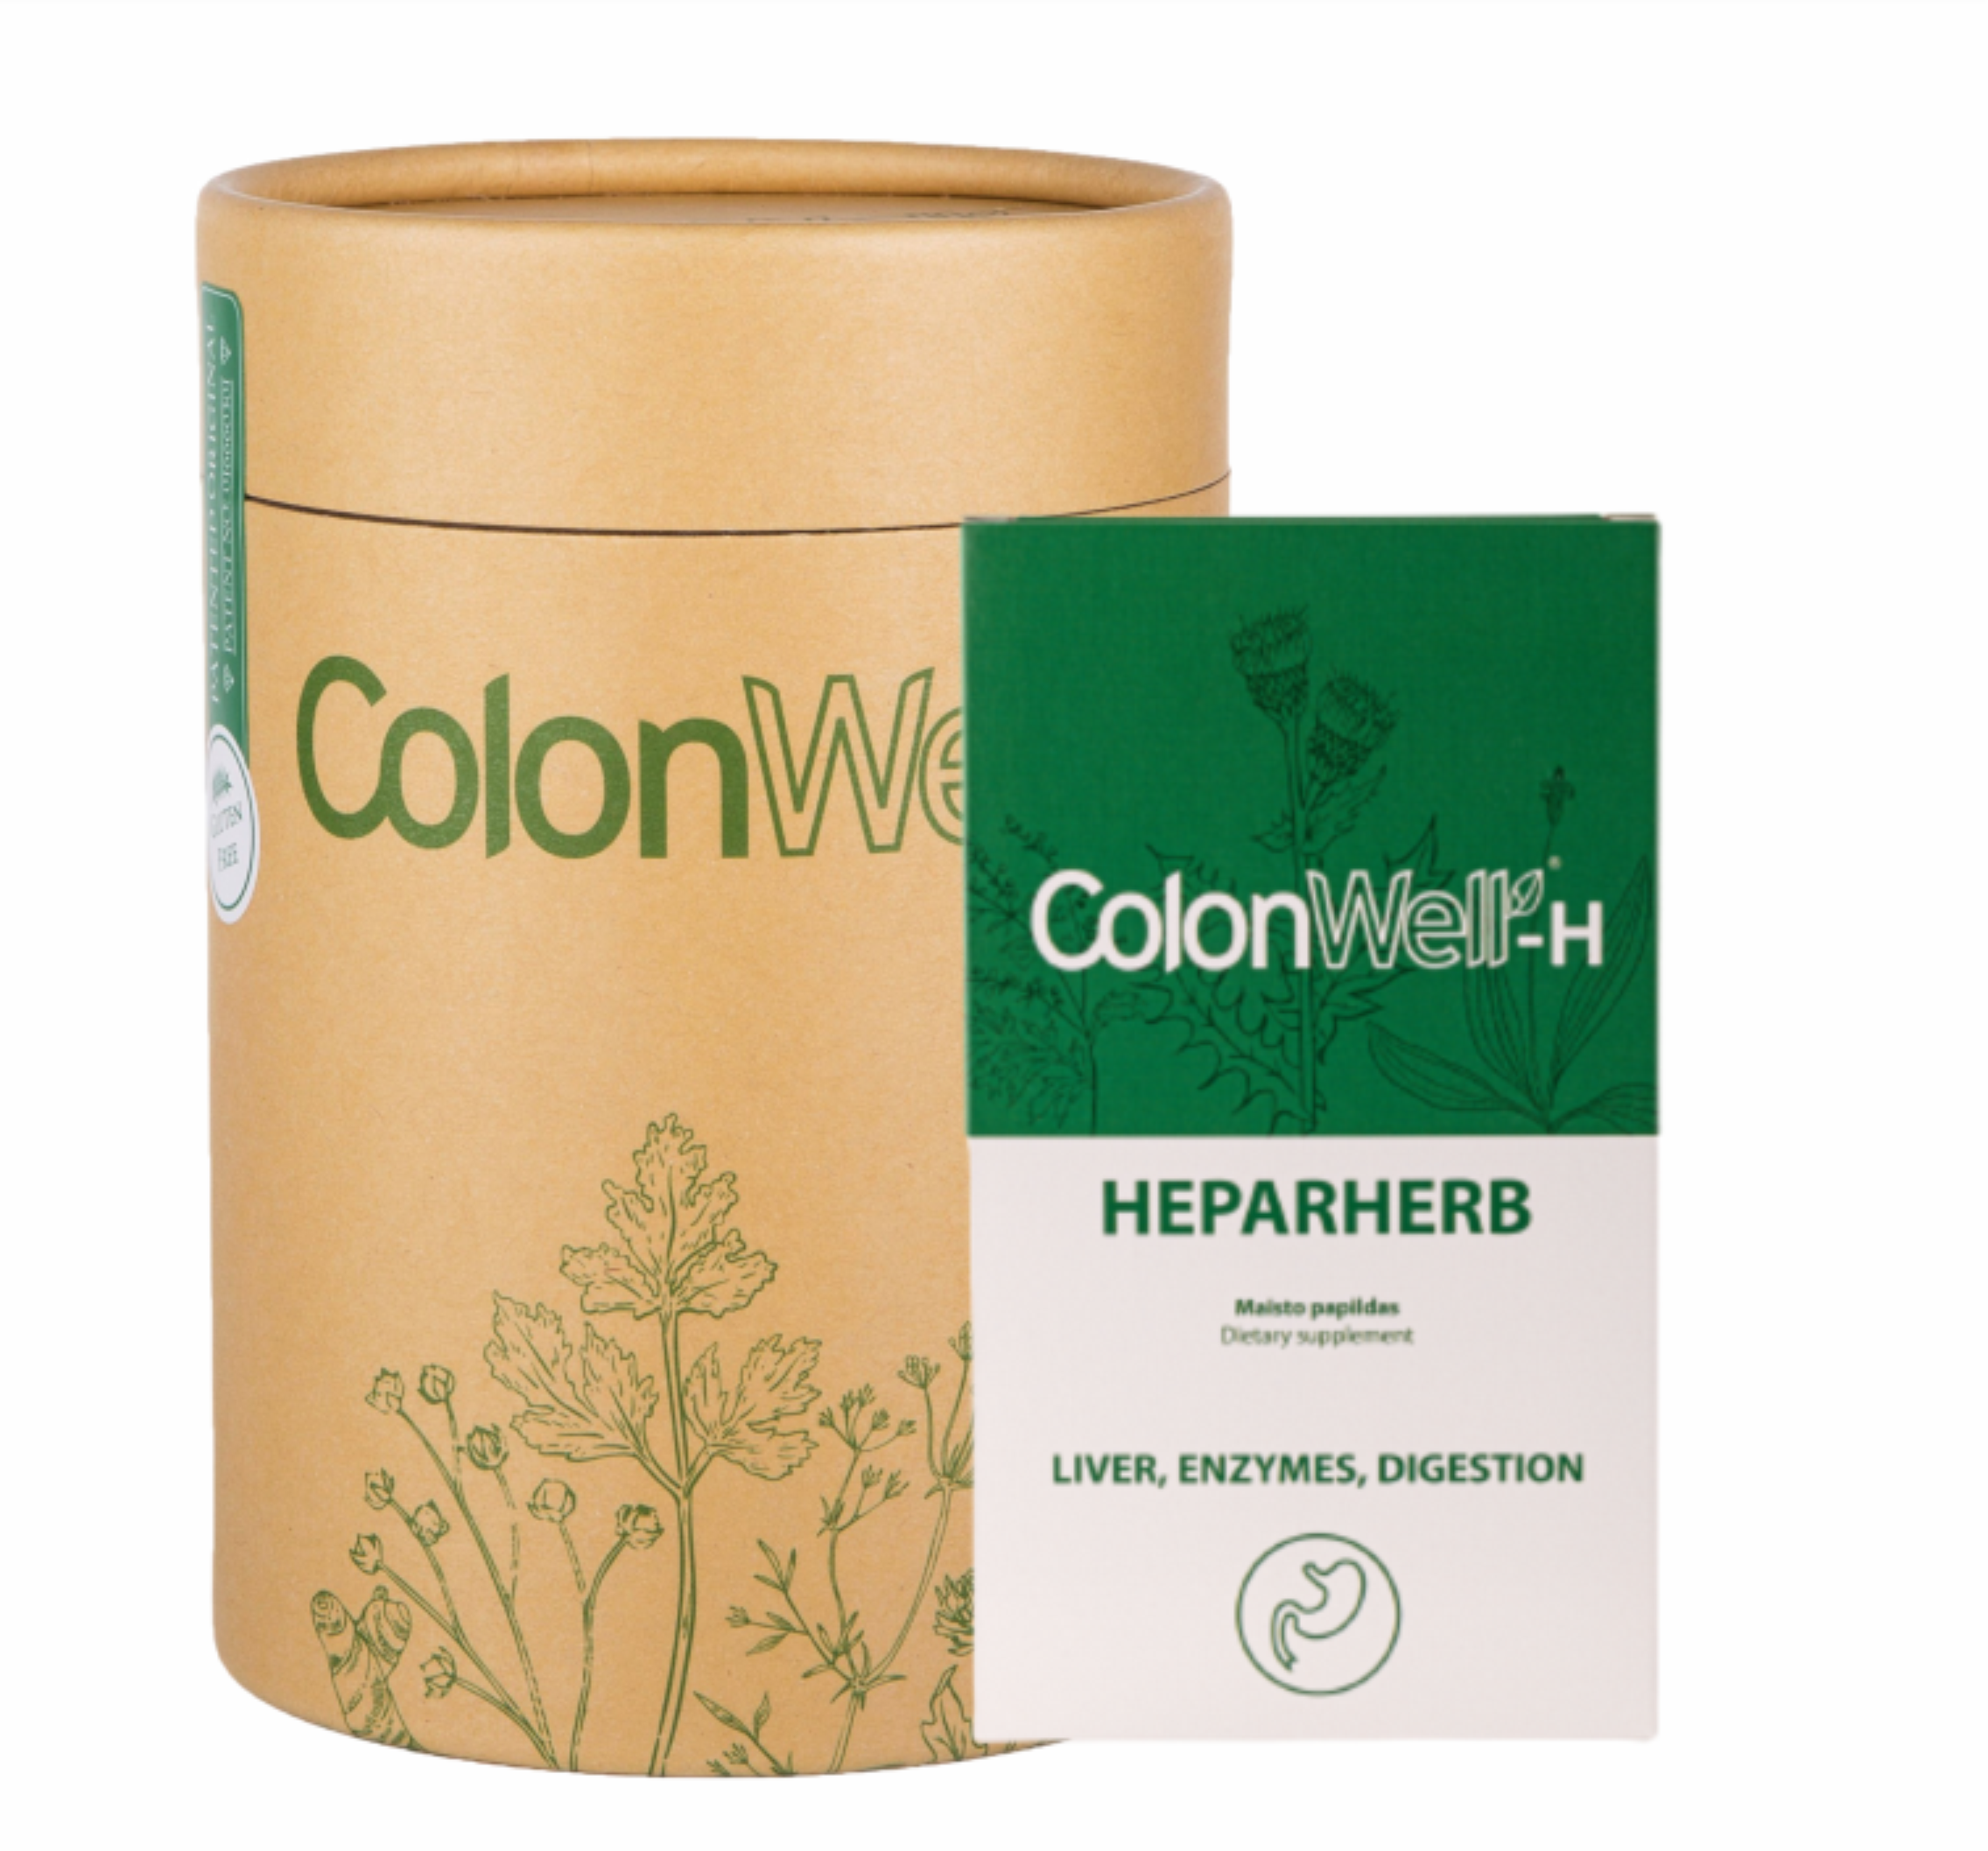 Colonwell.lt produktas - ColonWell (natūralaus skonio)400g.+HEPARHERB - maisto papildas (kepenims, virškinimo sistemai)